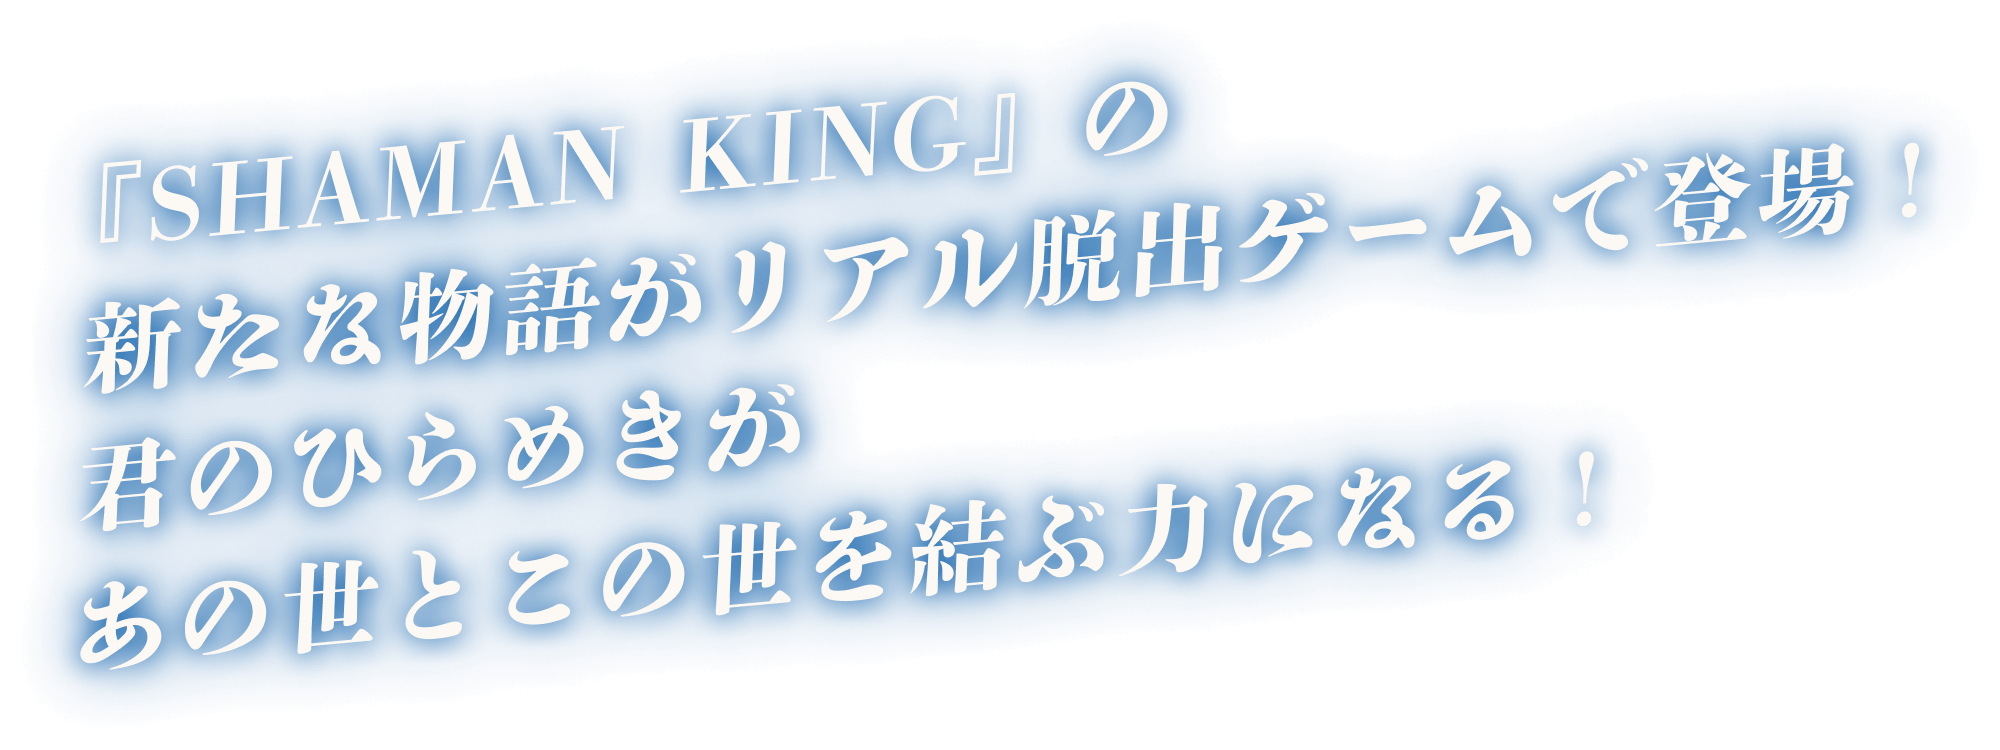 「SHAMAN KING」の新たな物語がリアル脱出ゲームで登場！君のひらめきがあの世とこの世を結ぶ力になる！